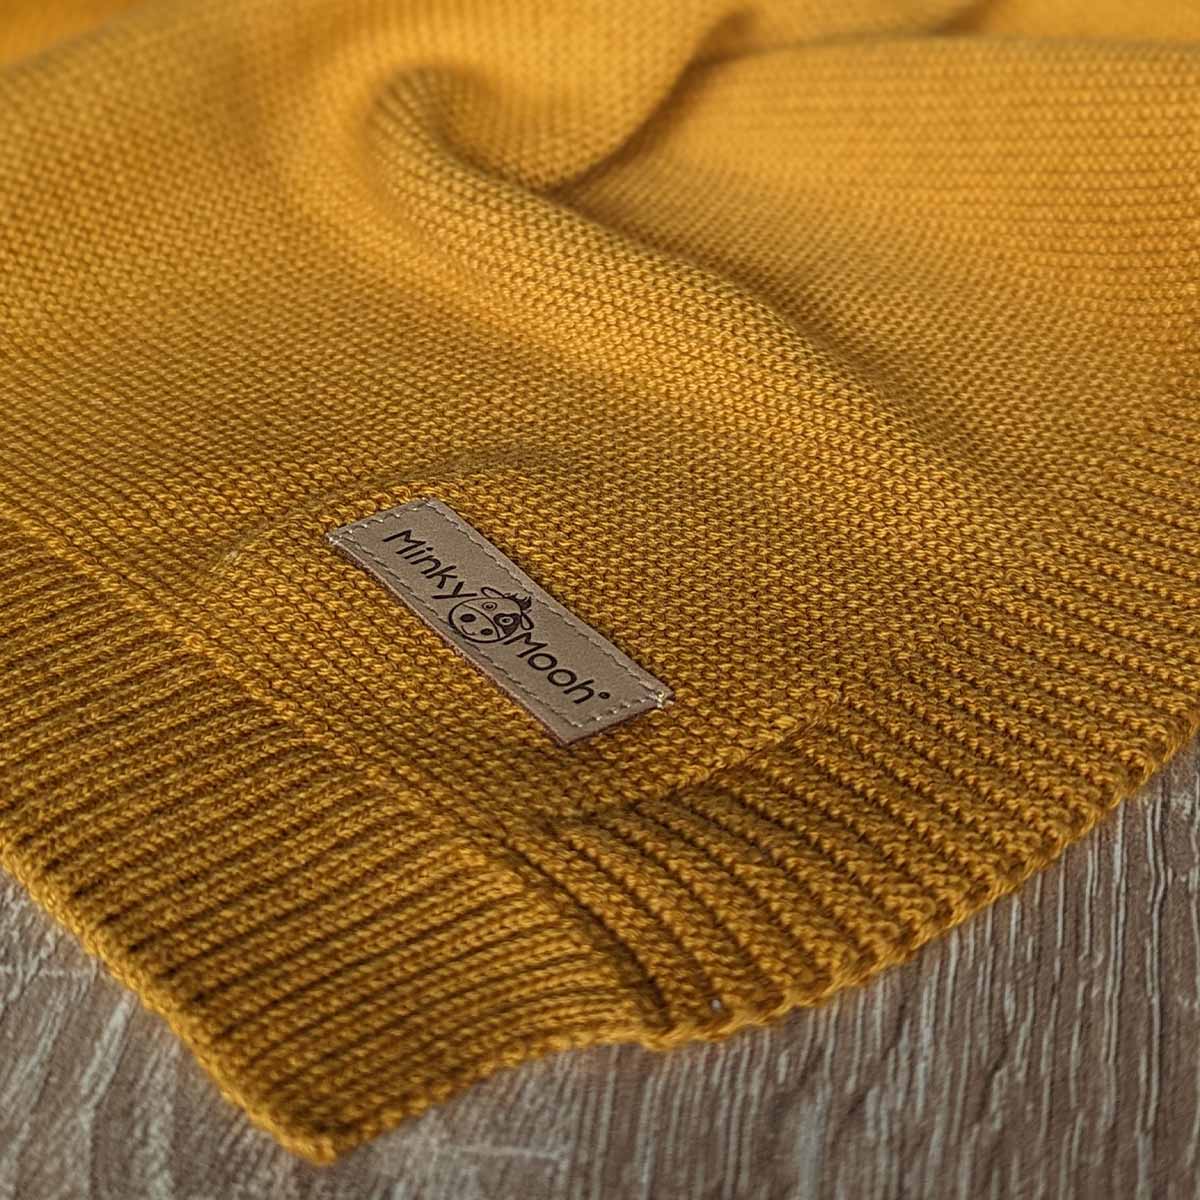 Nahaufnahme der Strick-Textur einer dunkel-gelbe Bio-Baumwolldecke mit Logo-Etikett 'Minky Mooh'.